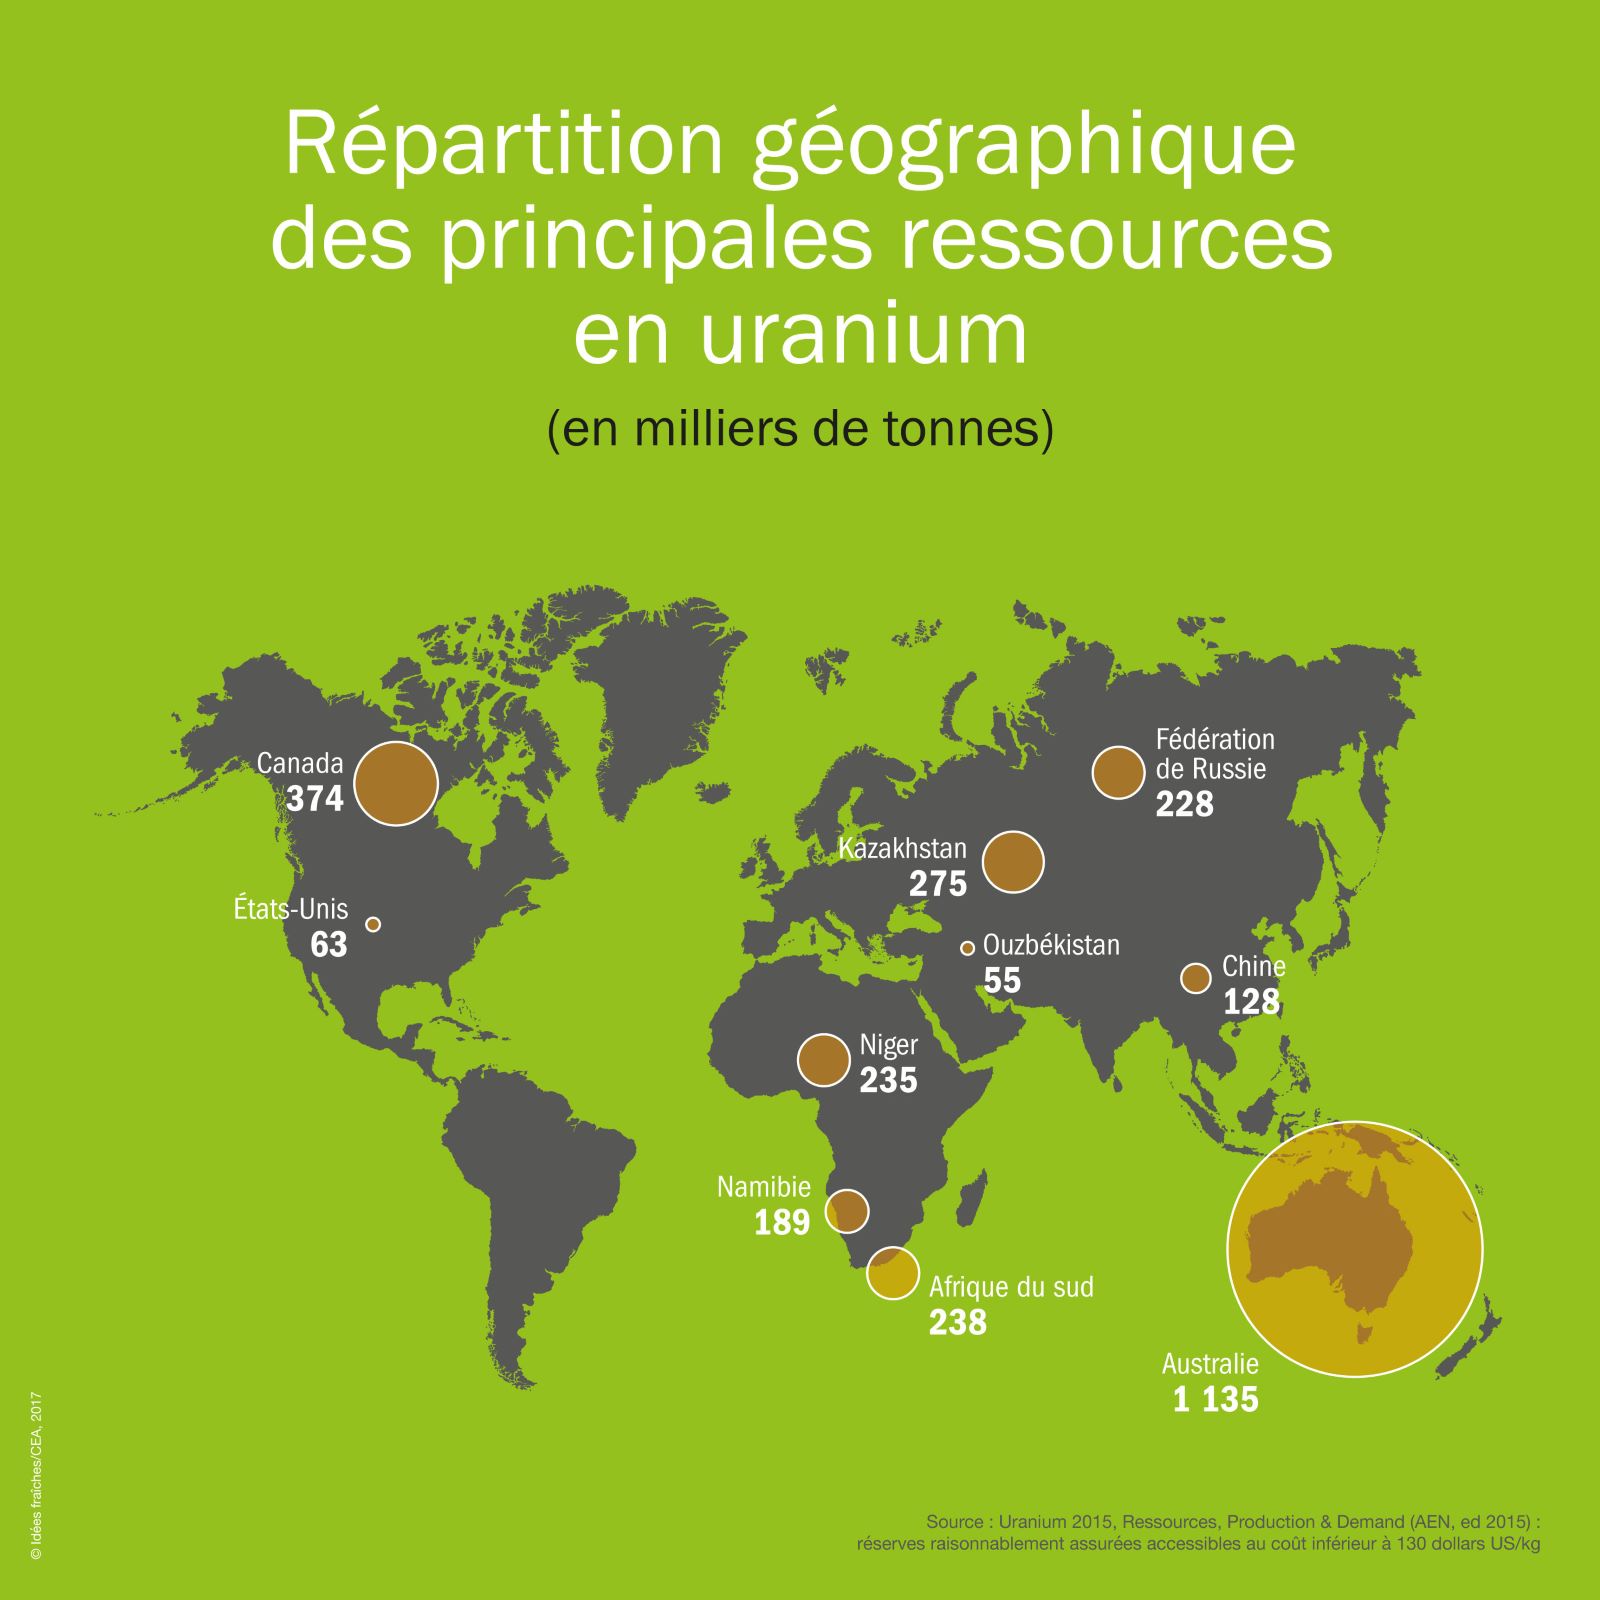 repartition-geographique-uraniumok.jpg